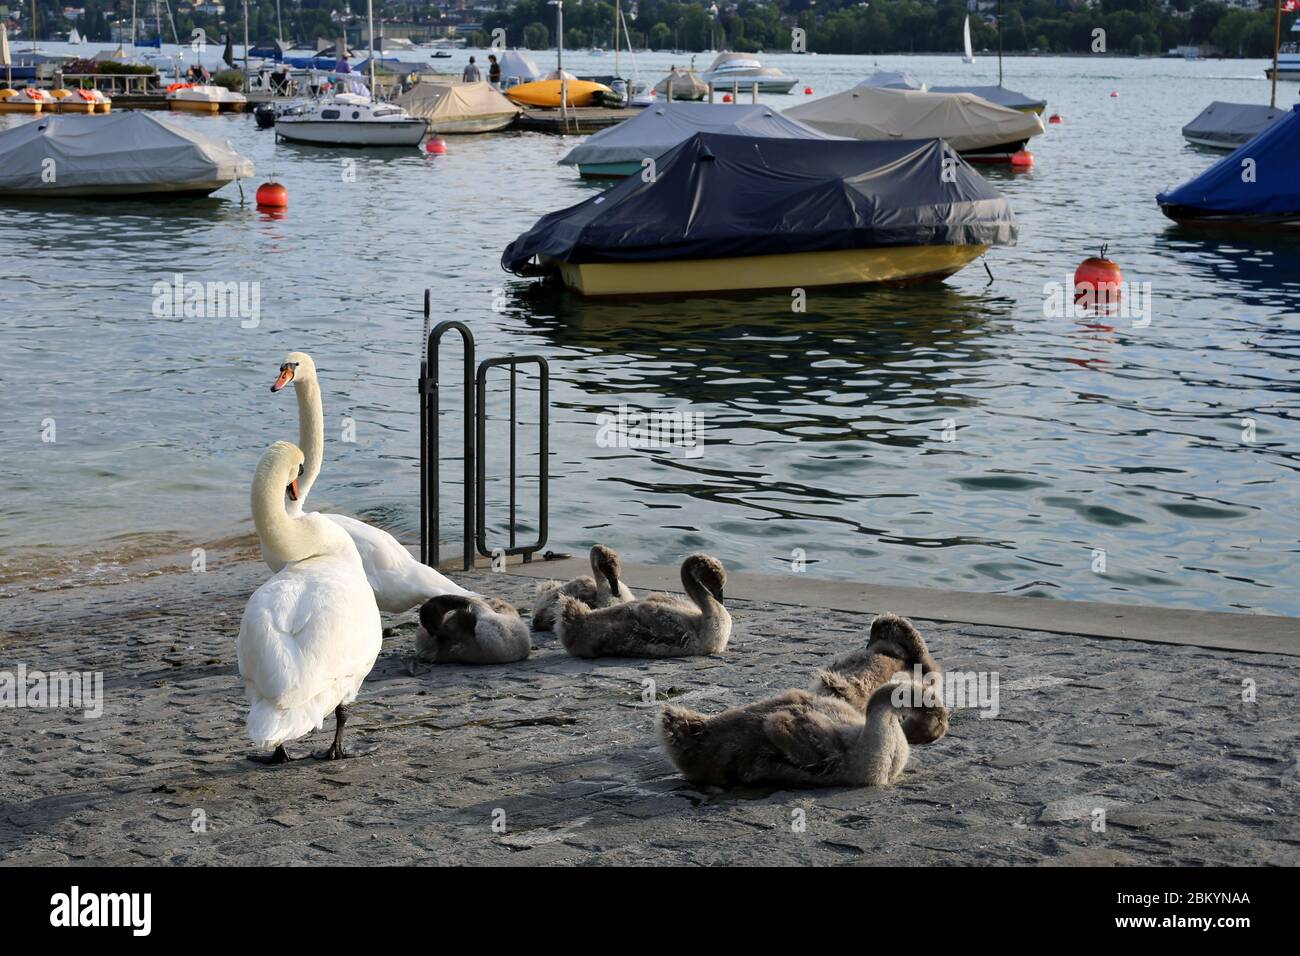 Schwanenfamilie fotografiert bei einem sonnigen Abend in Zürich Schweiz, Juli 2018. Es gibt zwei Erwachsene Schwäne, mehrere Babyschwäne, Boote, Flusswasser. Stockfoto